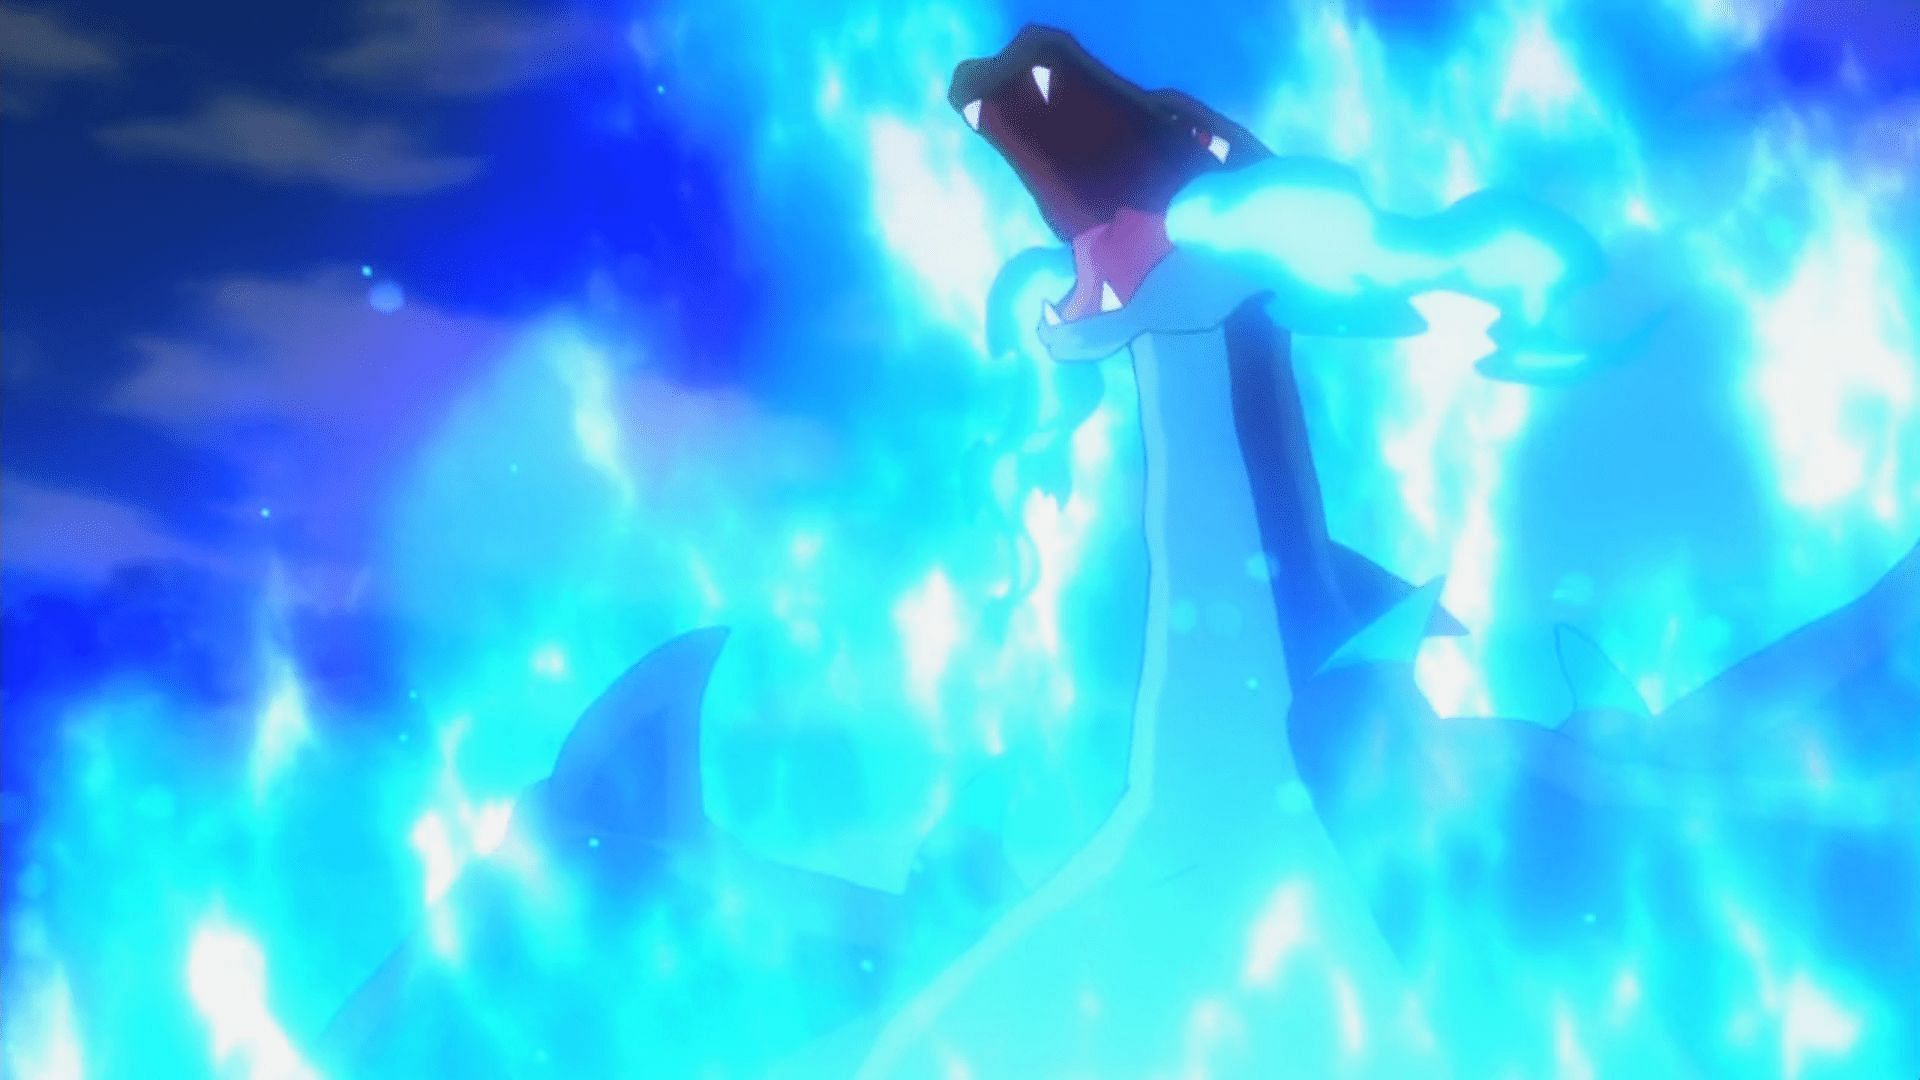 Mega Charizard X using Blast Burn, one of Pokemon GO